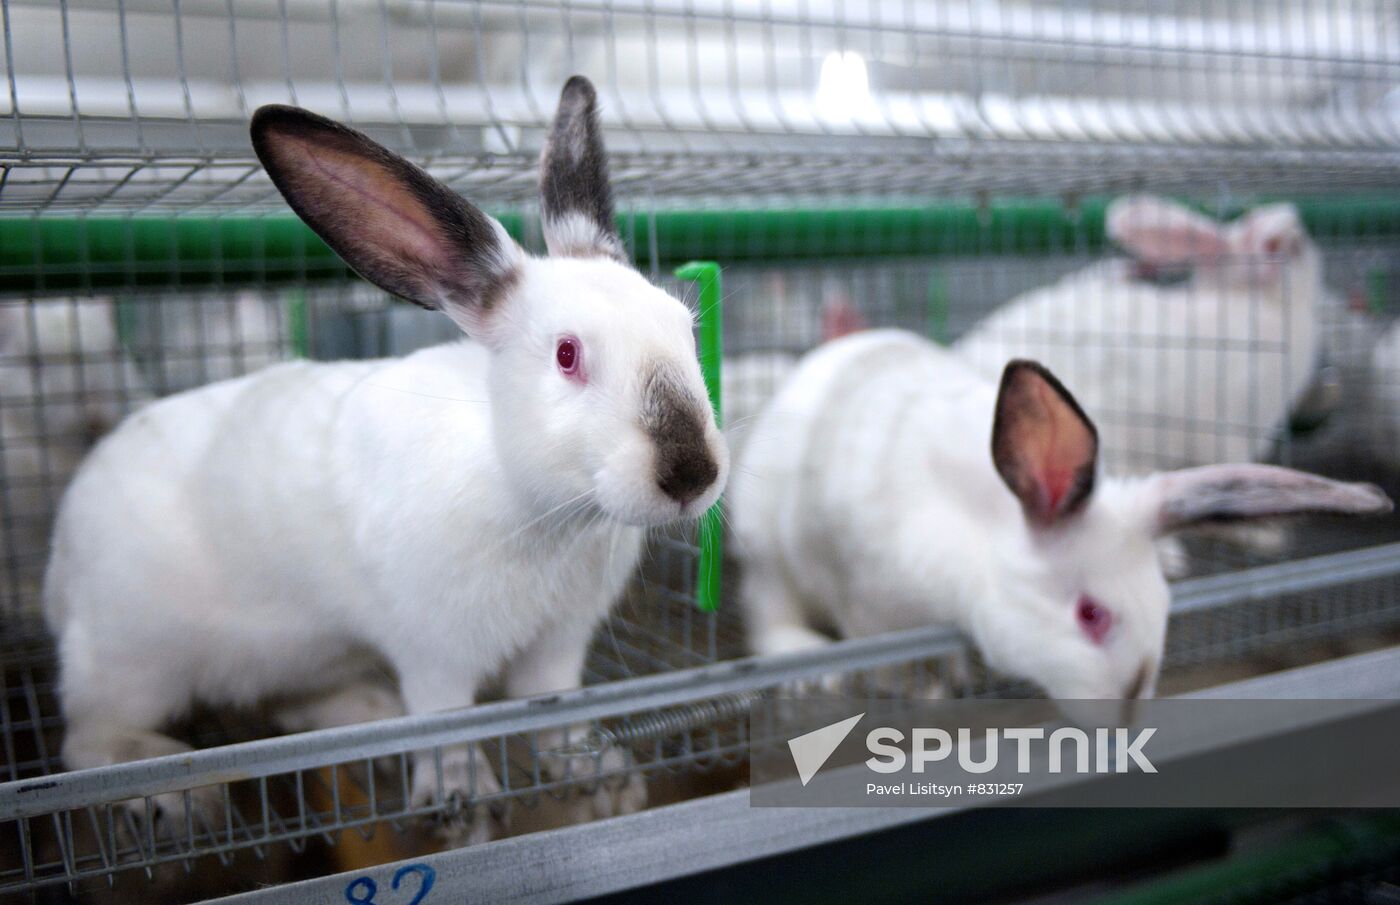 Rabbit-breeding farm in Sverdlovsk Region